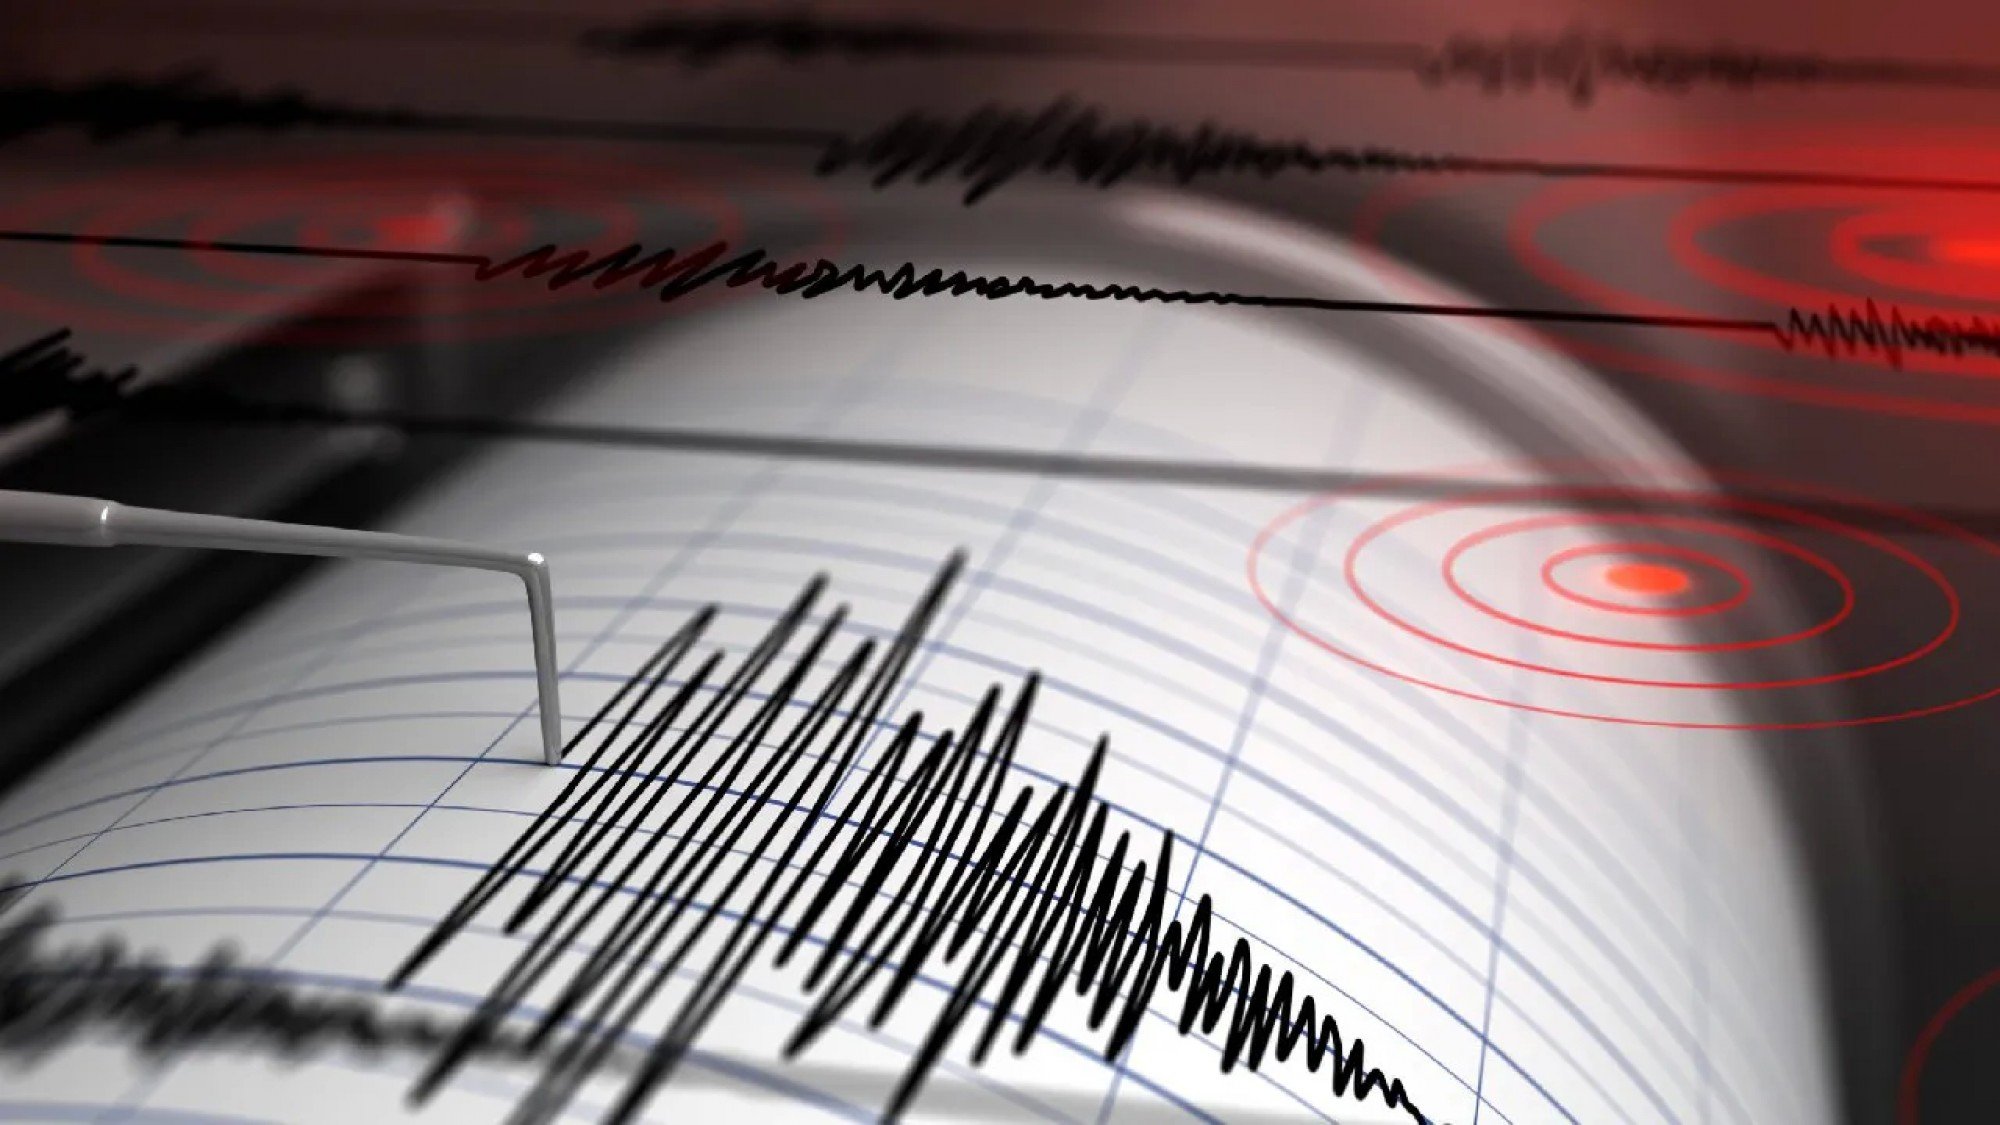  Cinci cutremure au avut loc luni dimineaţă în zona seismică Vrancea